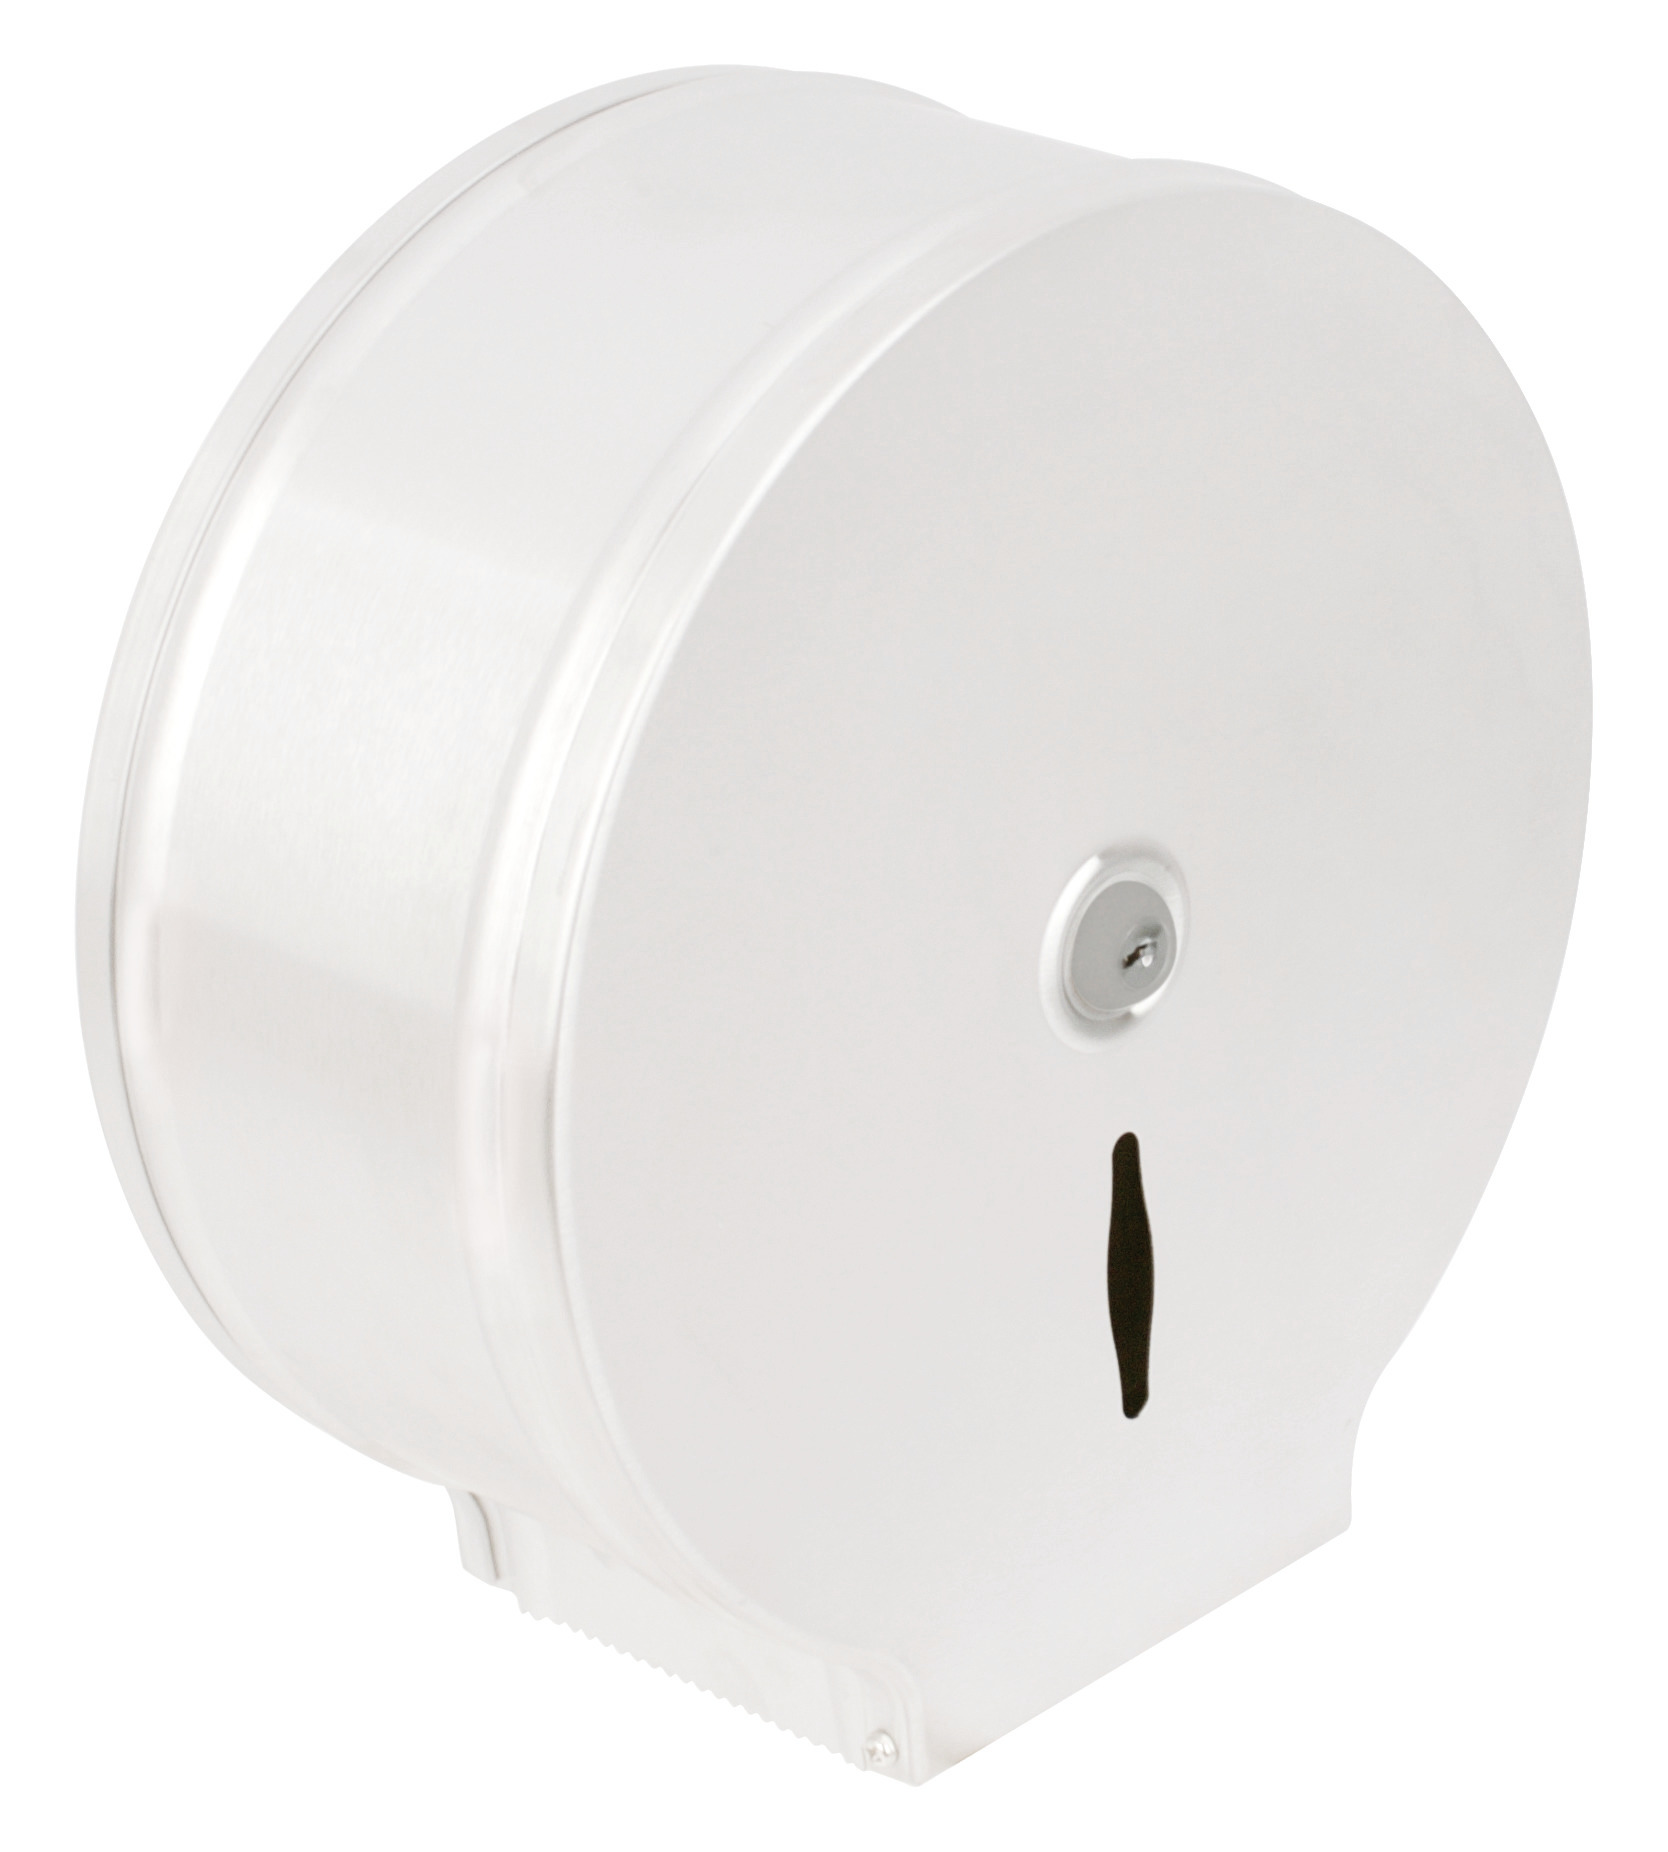 Toilettenpapier-Spender für 400 m Rolle Metall weiß 286 x 117 x 286 mm